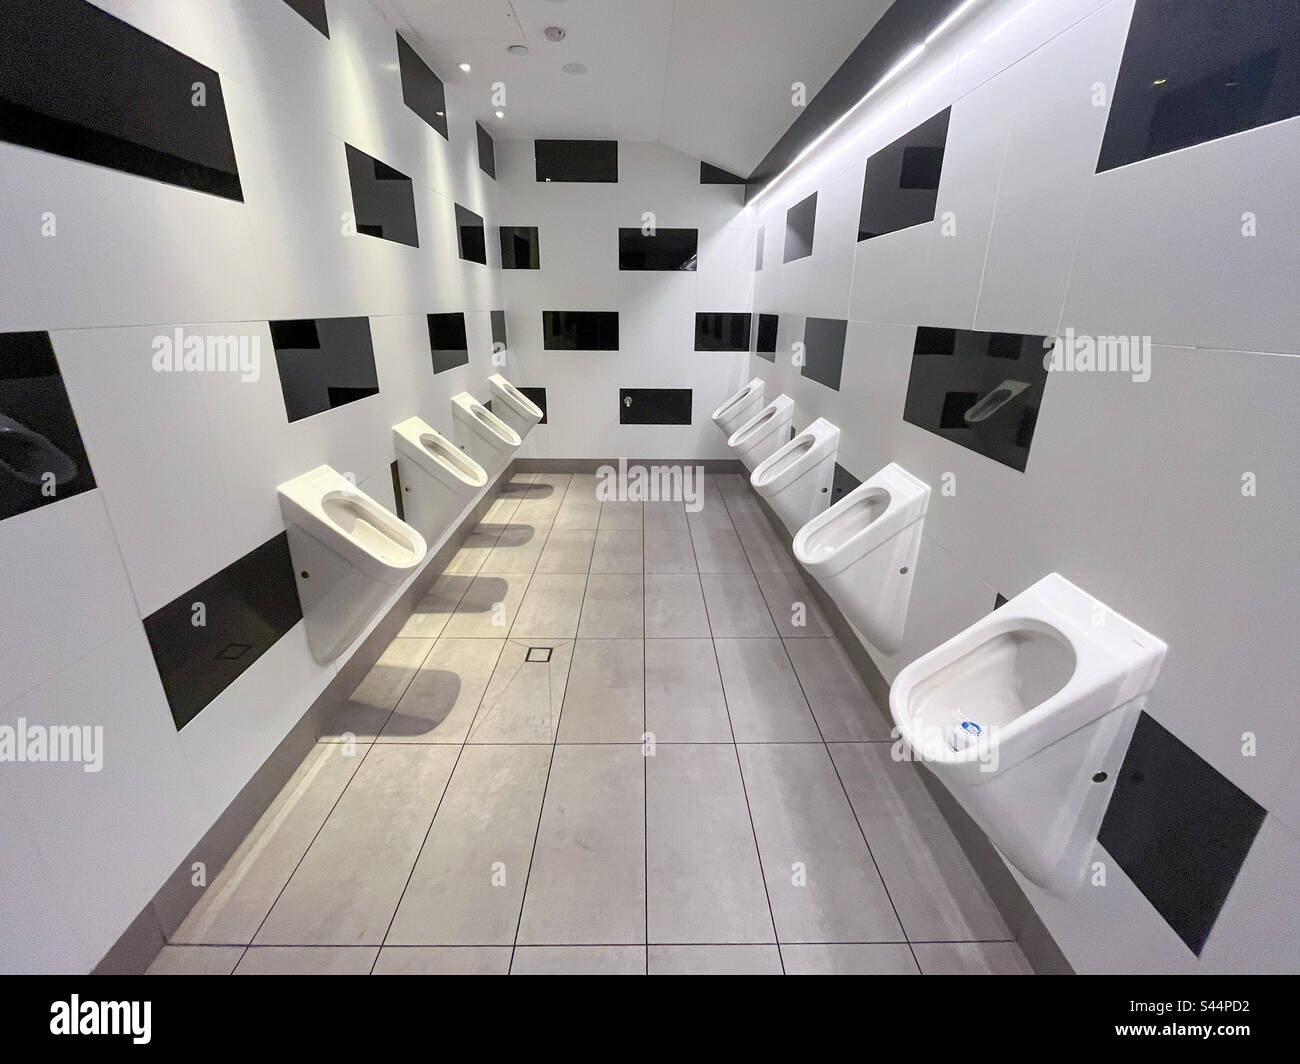 Männer Urinale Männer Toiletten Stockfoto